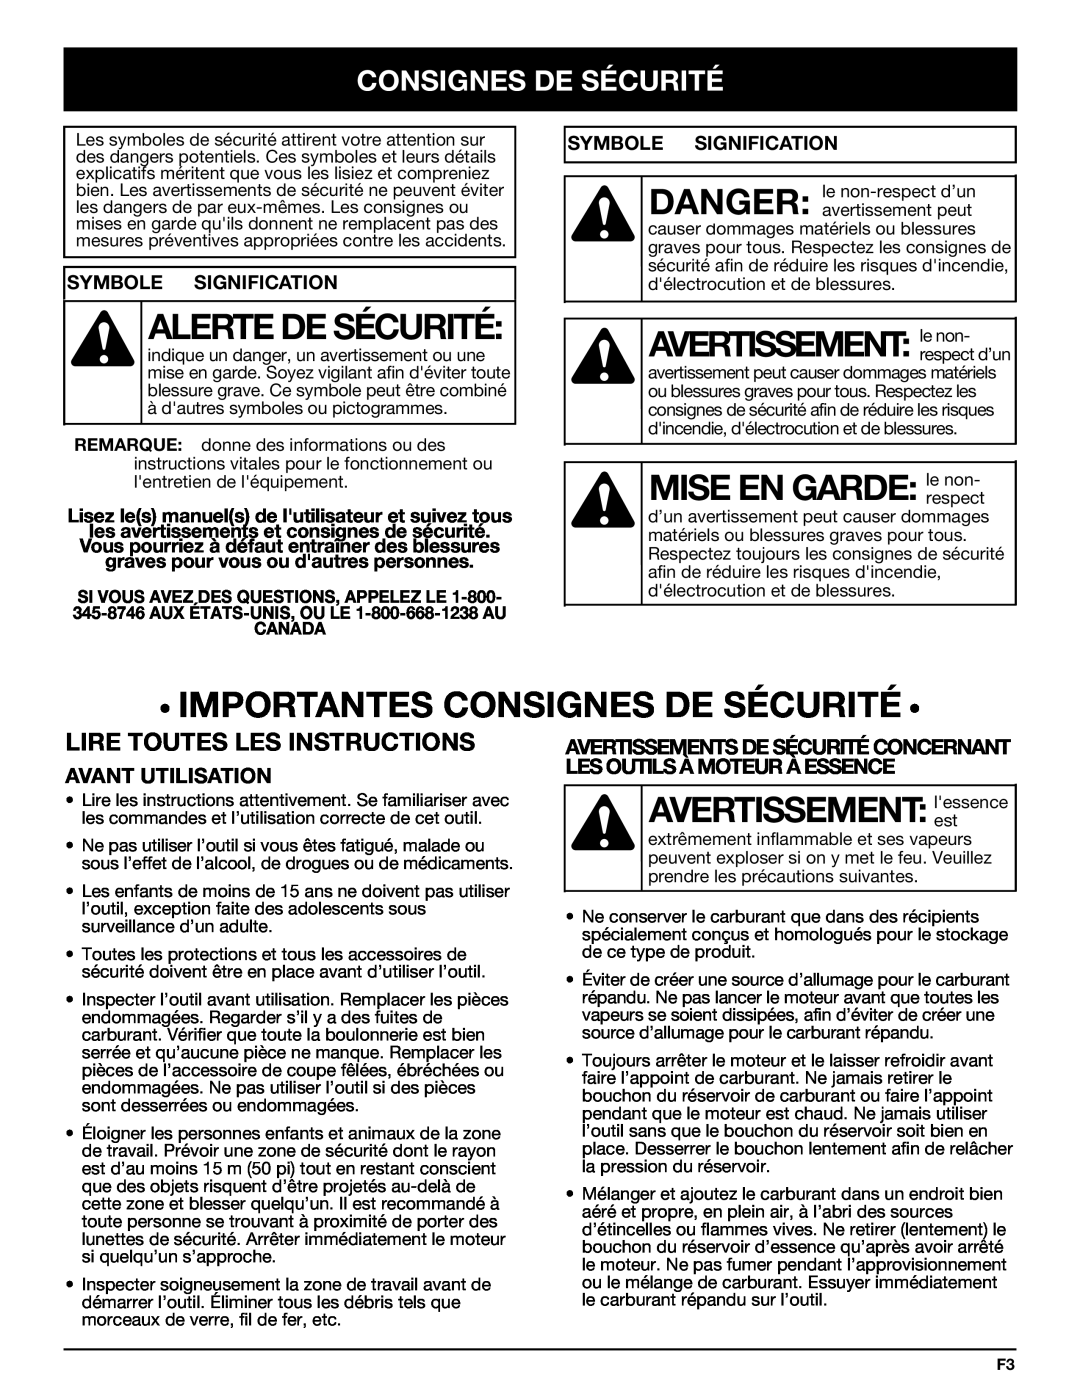 Bolens YM320BV manual Alerte De Sécurité, AVERTISSEMENT:le non, MISE EN GARDE:le non, • Importantes Consignes De Sécurité • 